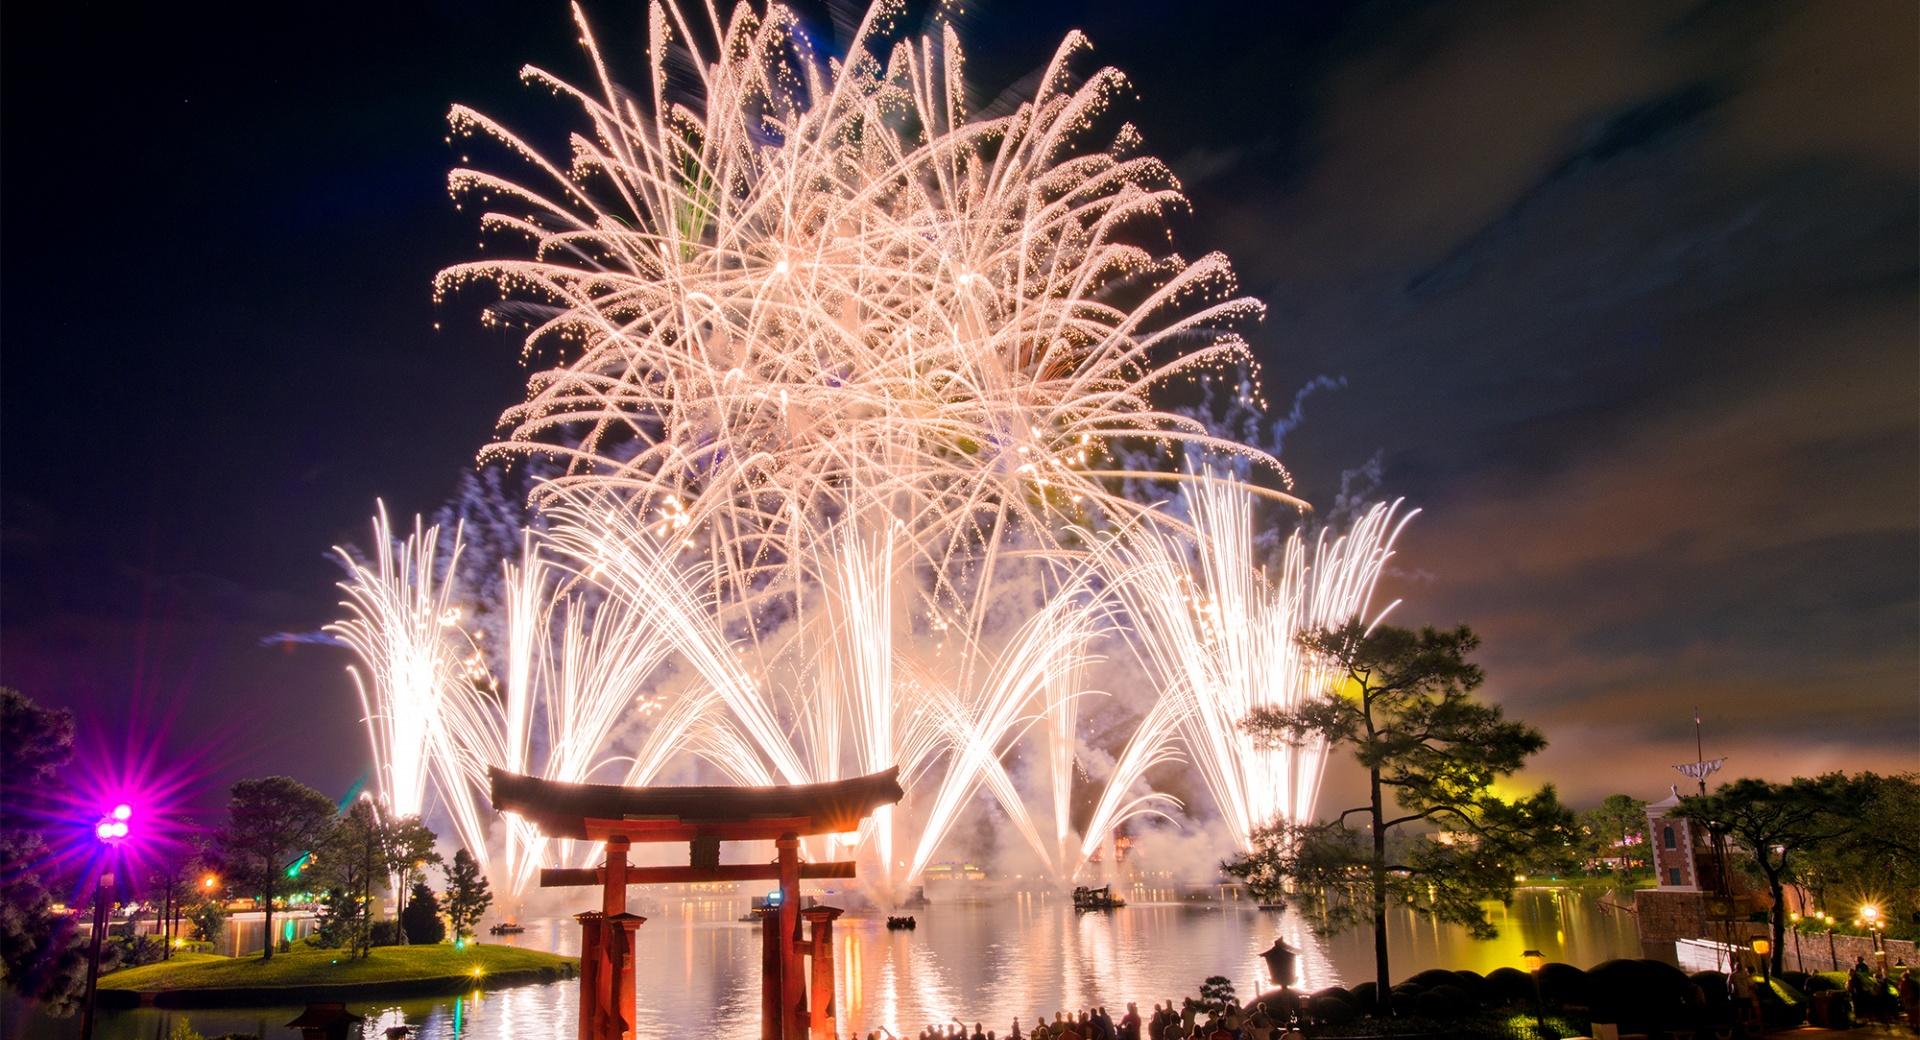 Walt Disney World Fireworks at 1024 x 1024 iPad size wallpapers HD quality